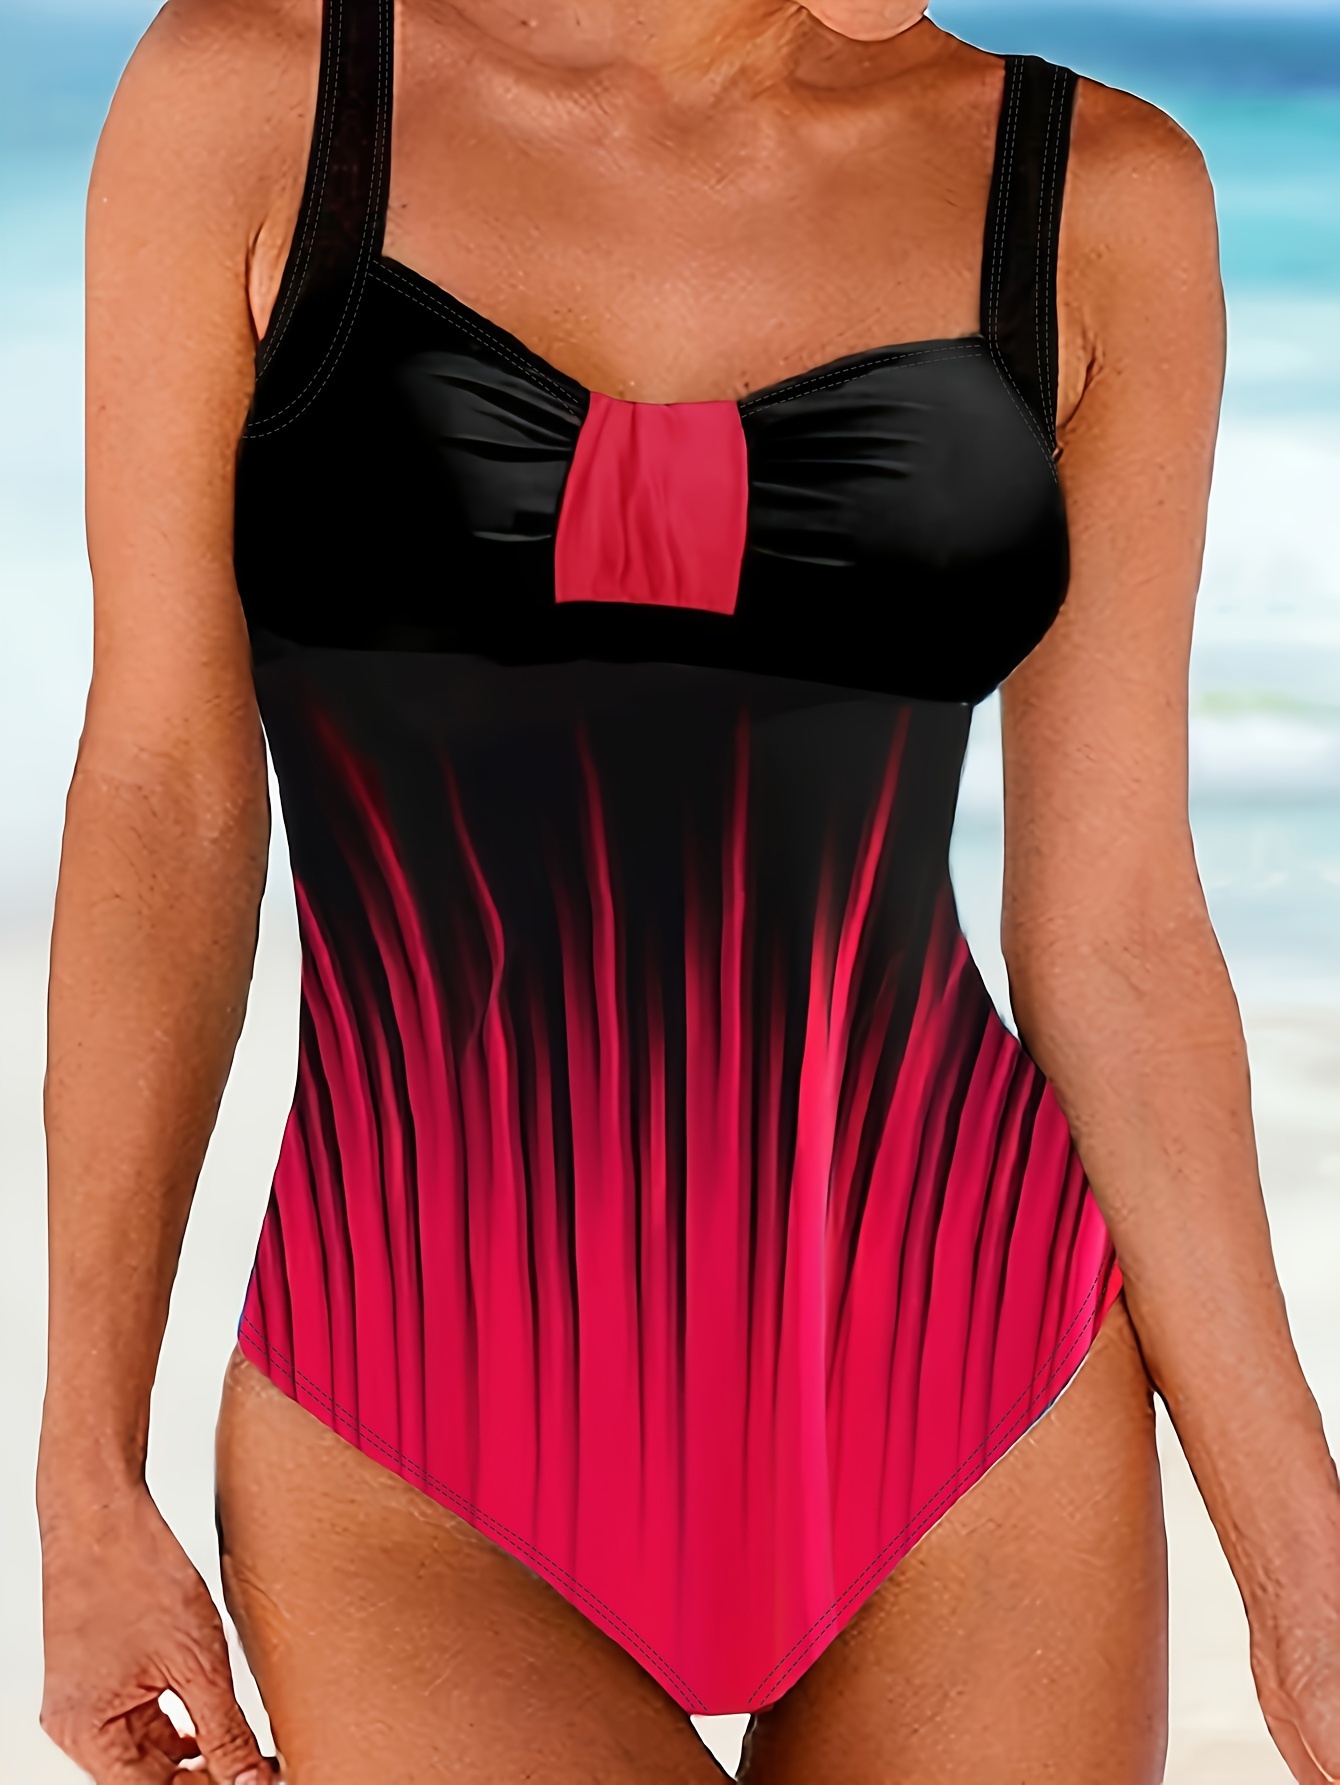 Colorful Tummy Control Swimsuit, Scoop Neck One-piece Bathing Suit, Stripe  & Polka Dot Design, Women's Shapewear & Swimwear